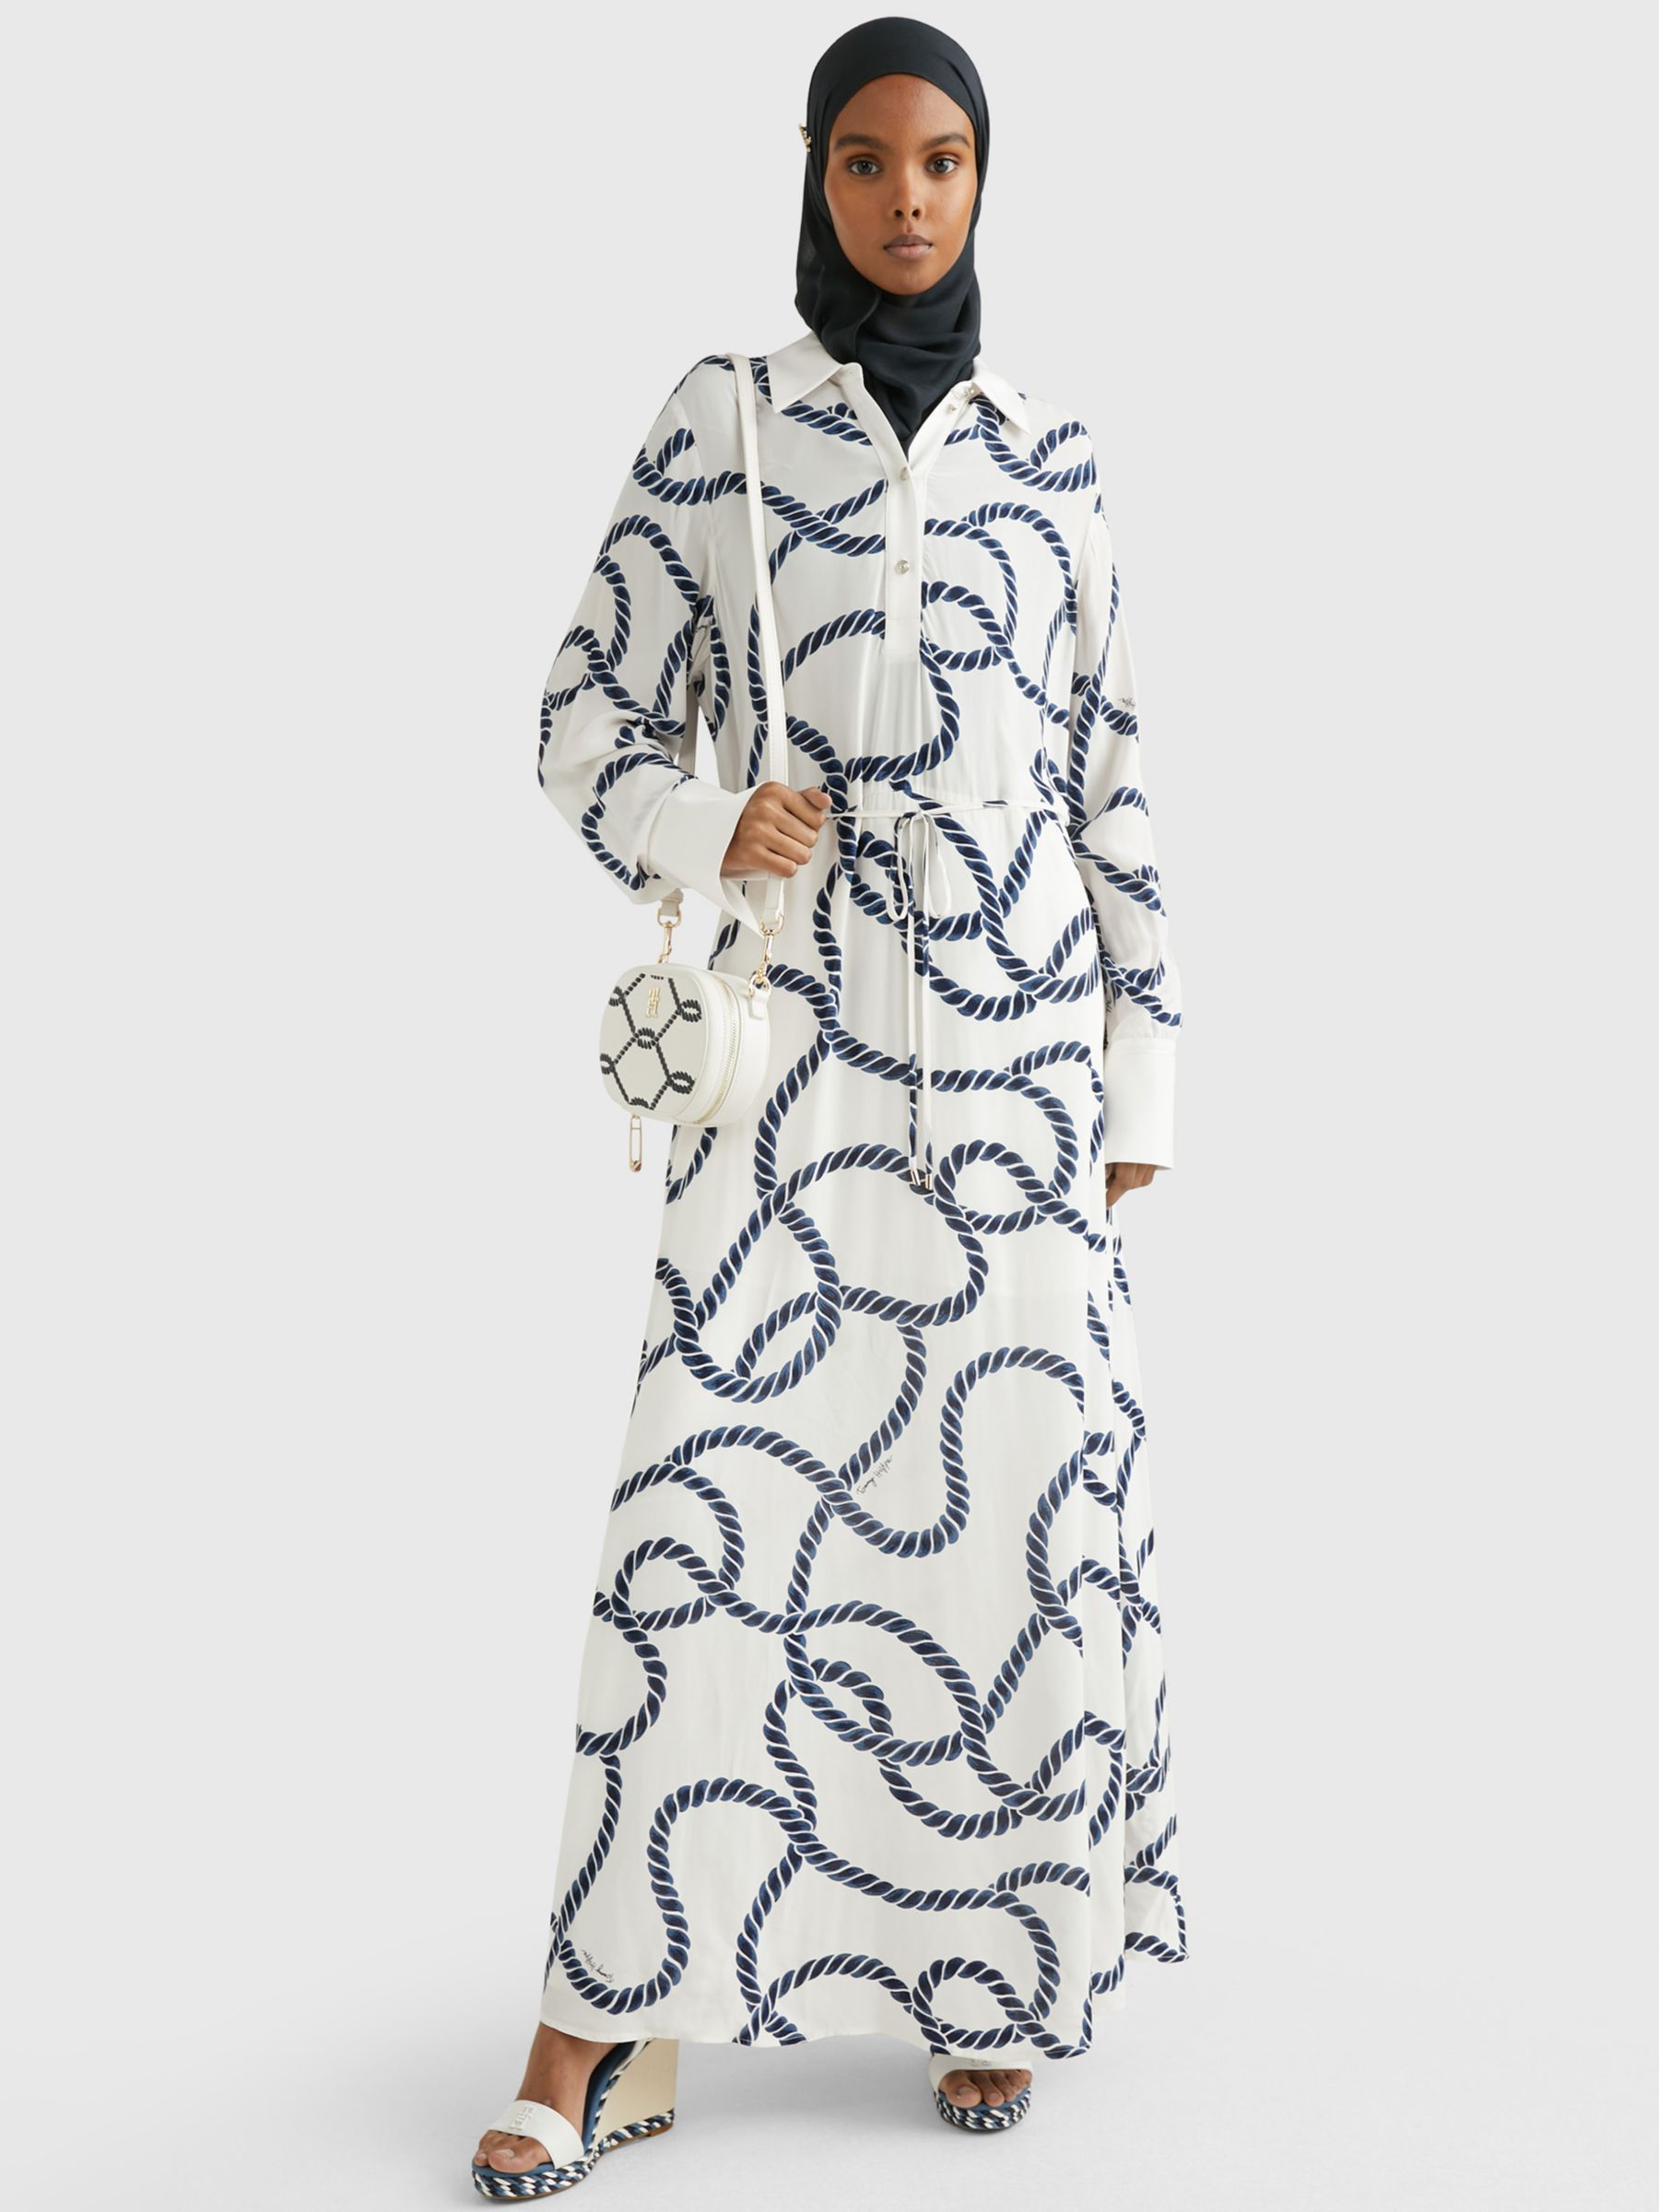 kryds skole Forældet Tommy Hilfiger Rope Print Maxi Dress, White/Navy at John Lewis & Partners